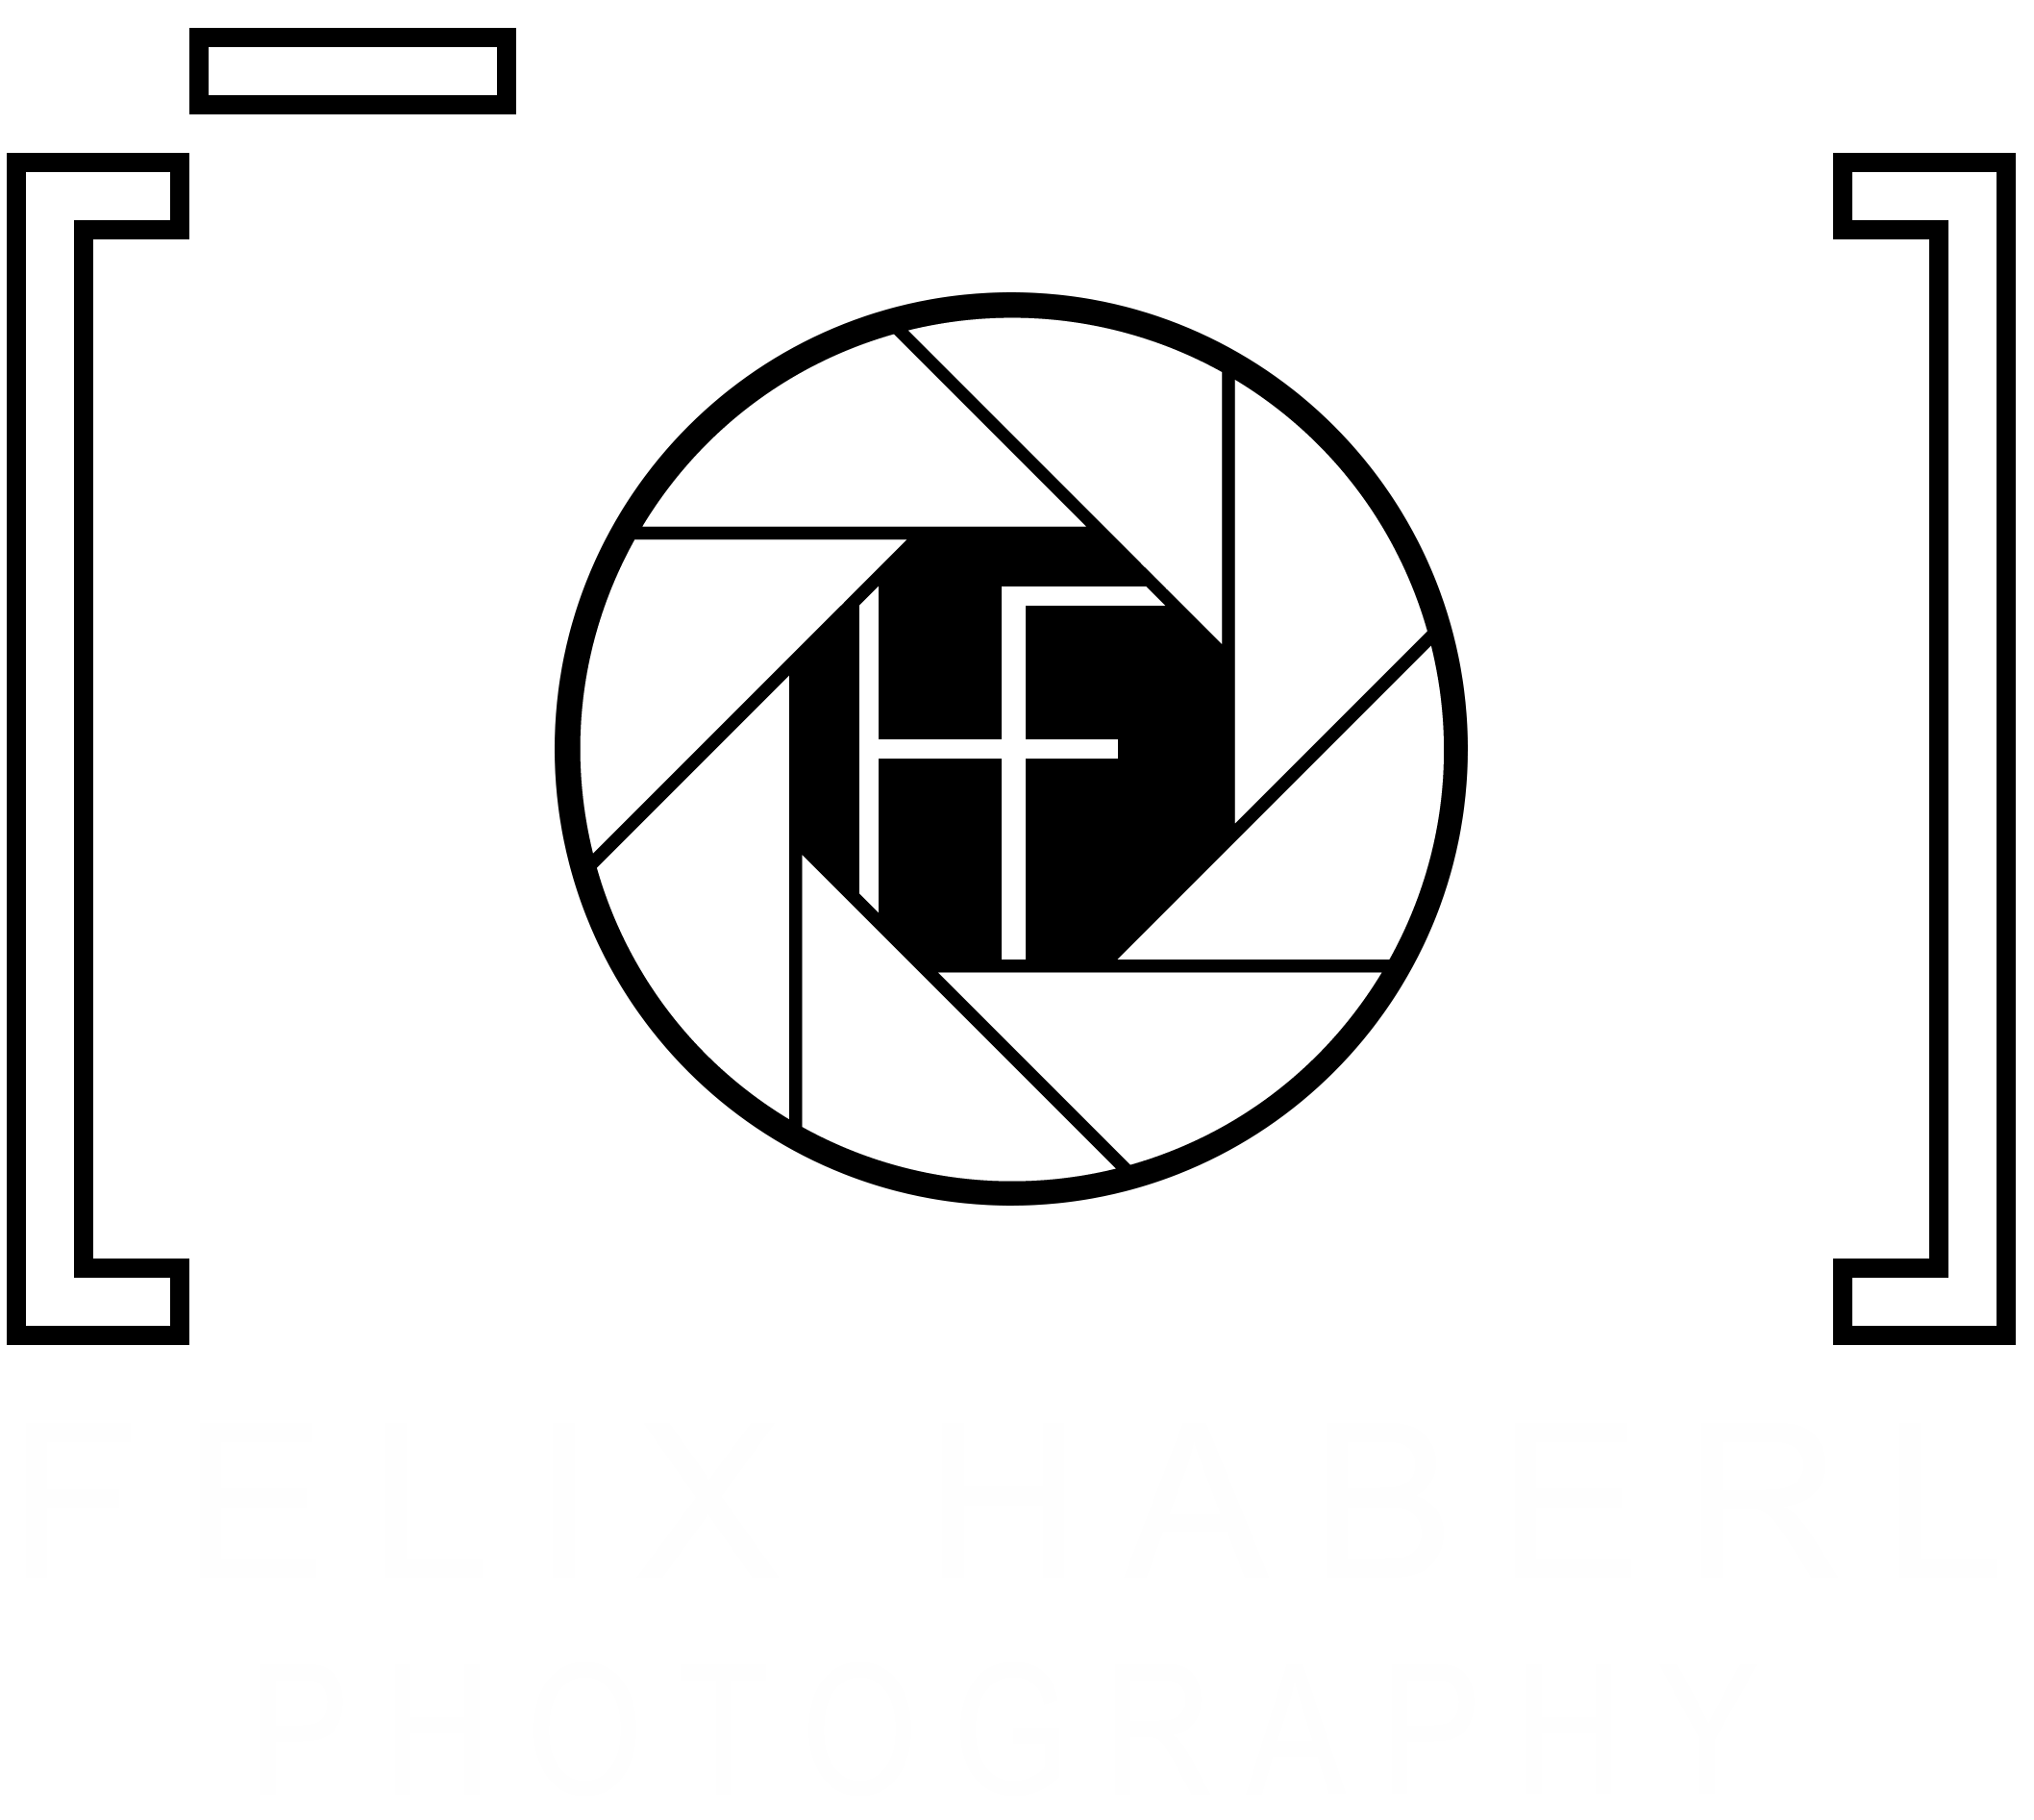 Felix Haberl